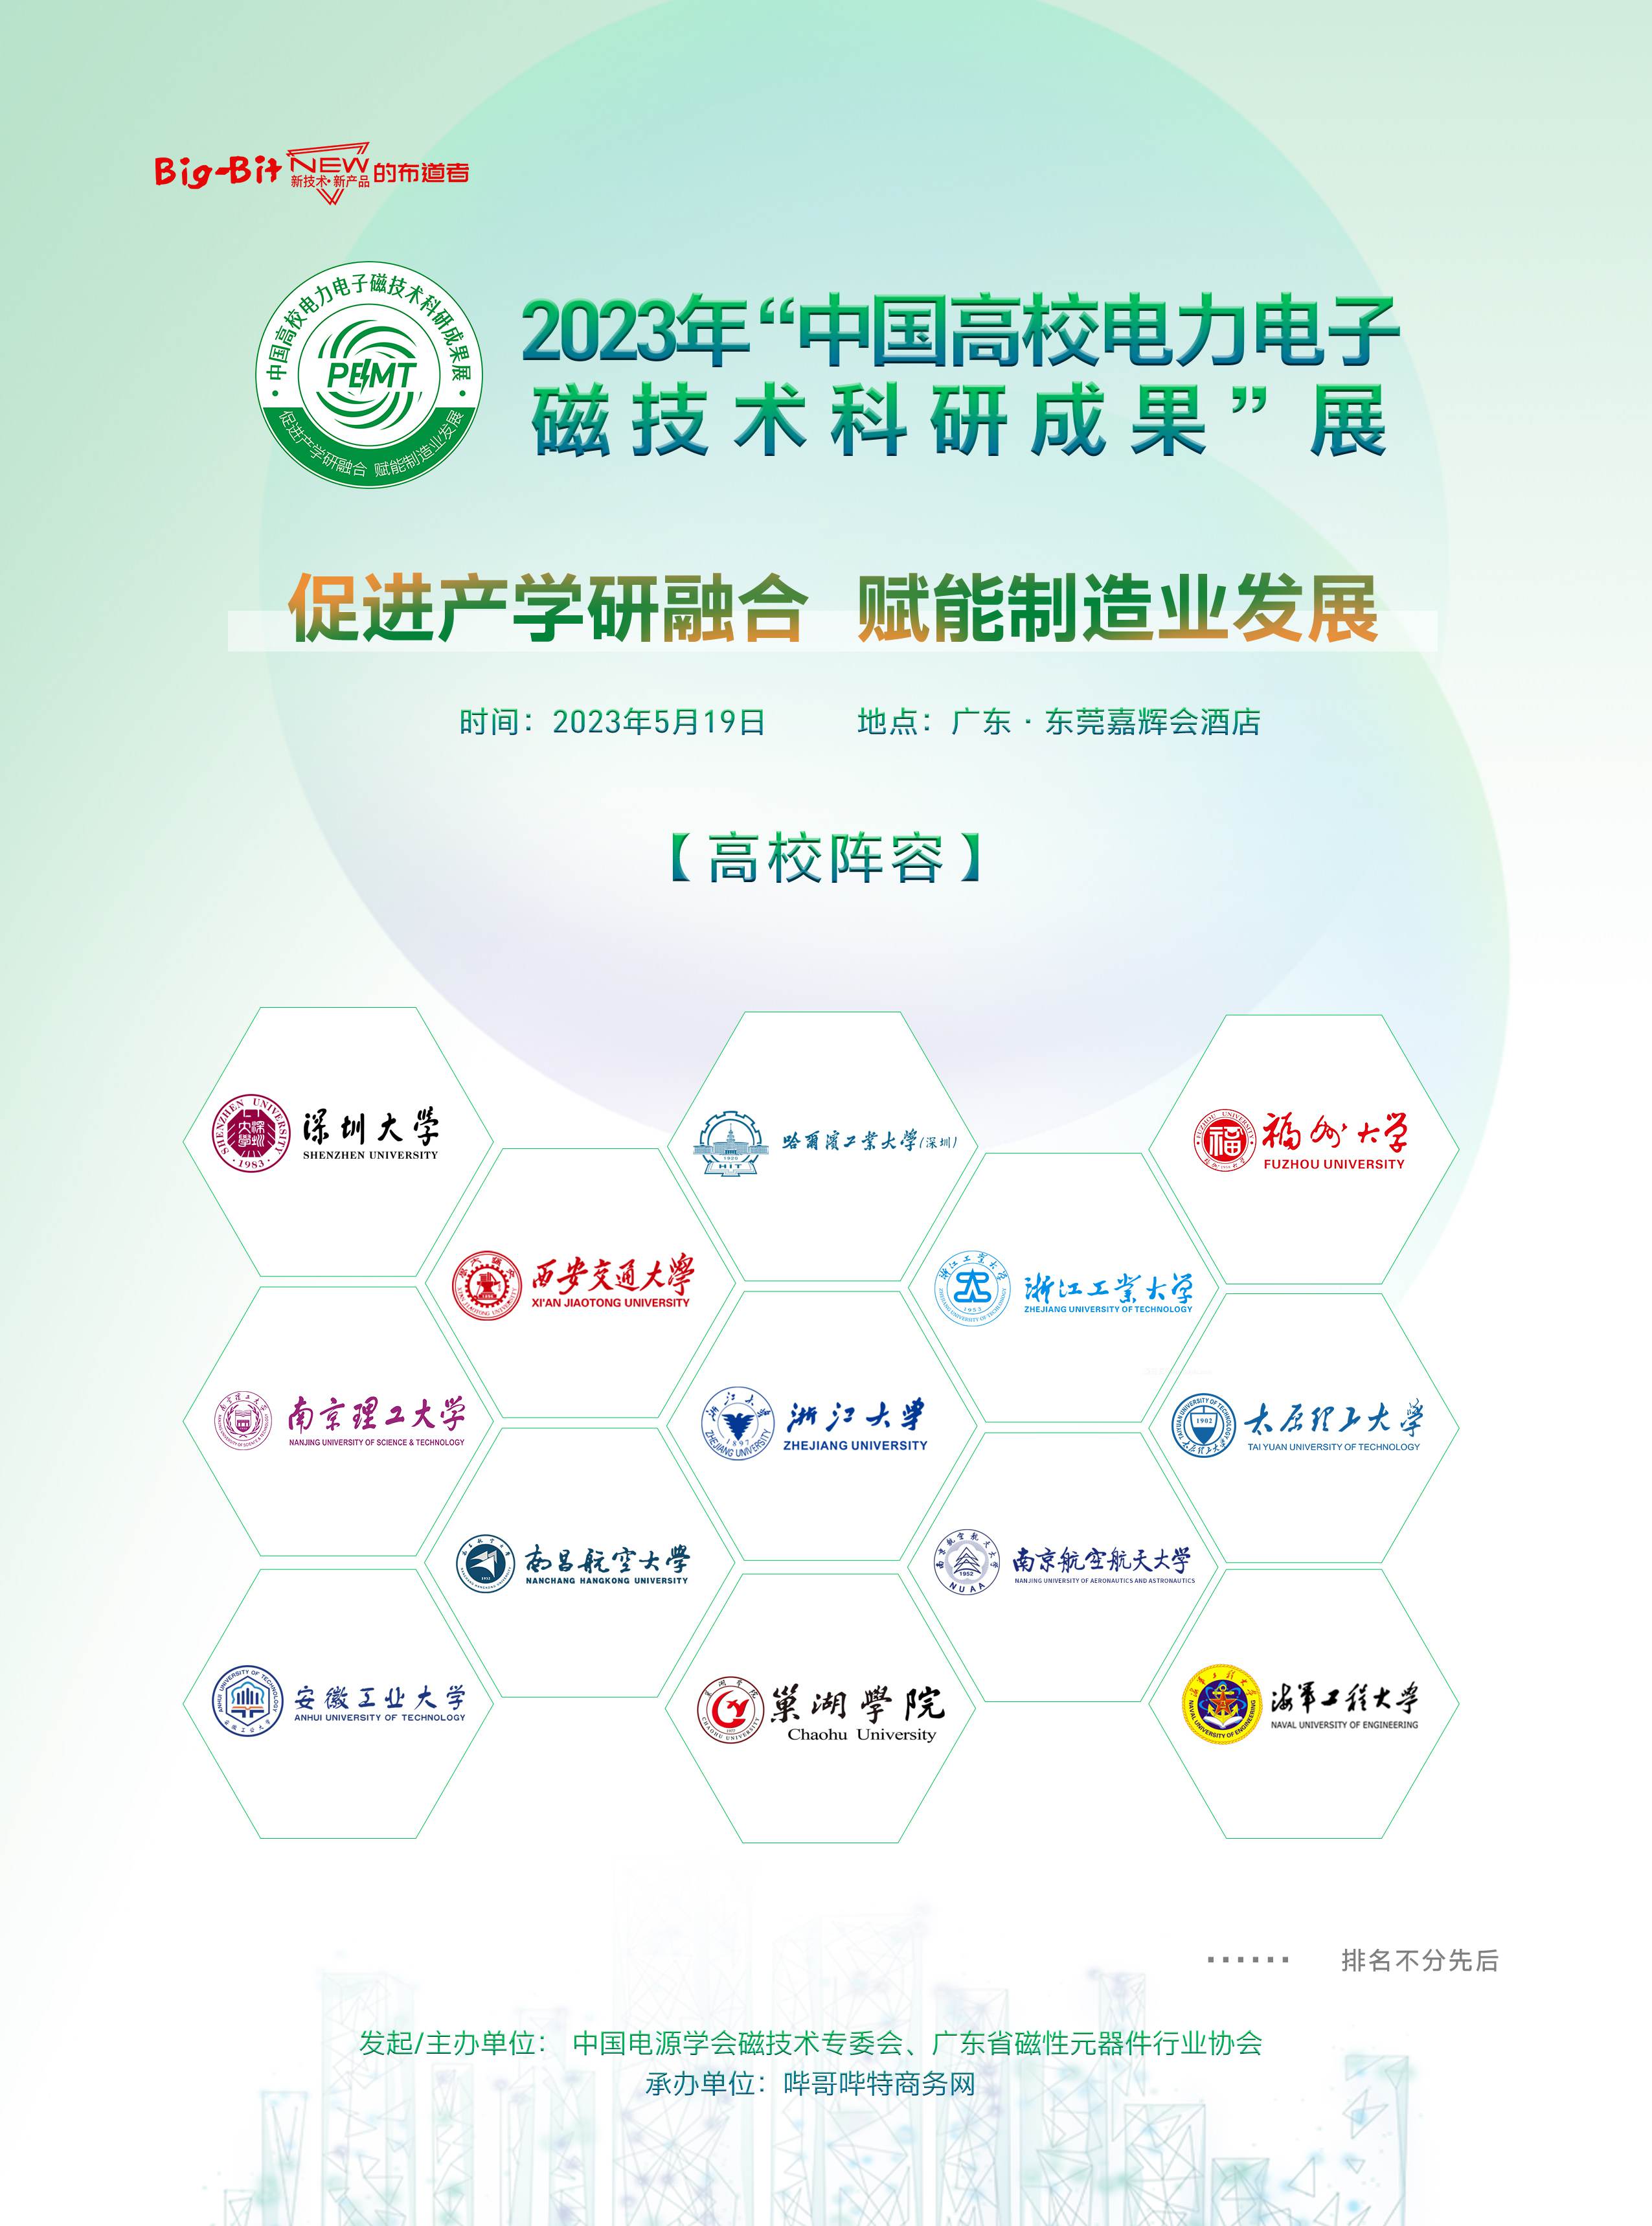 中國高校電力電子磁技術科研成果展即將舉辦